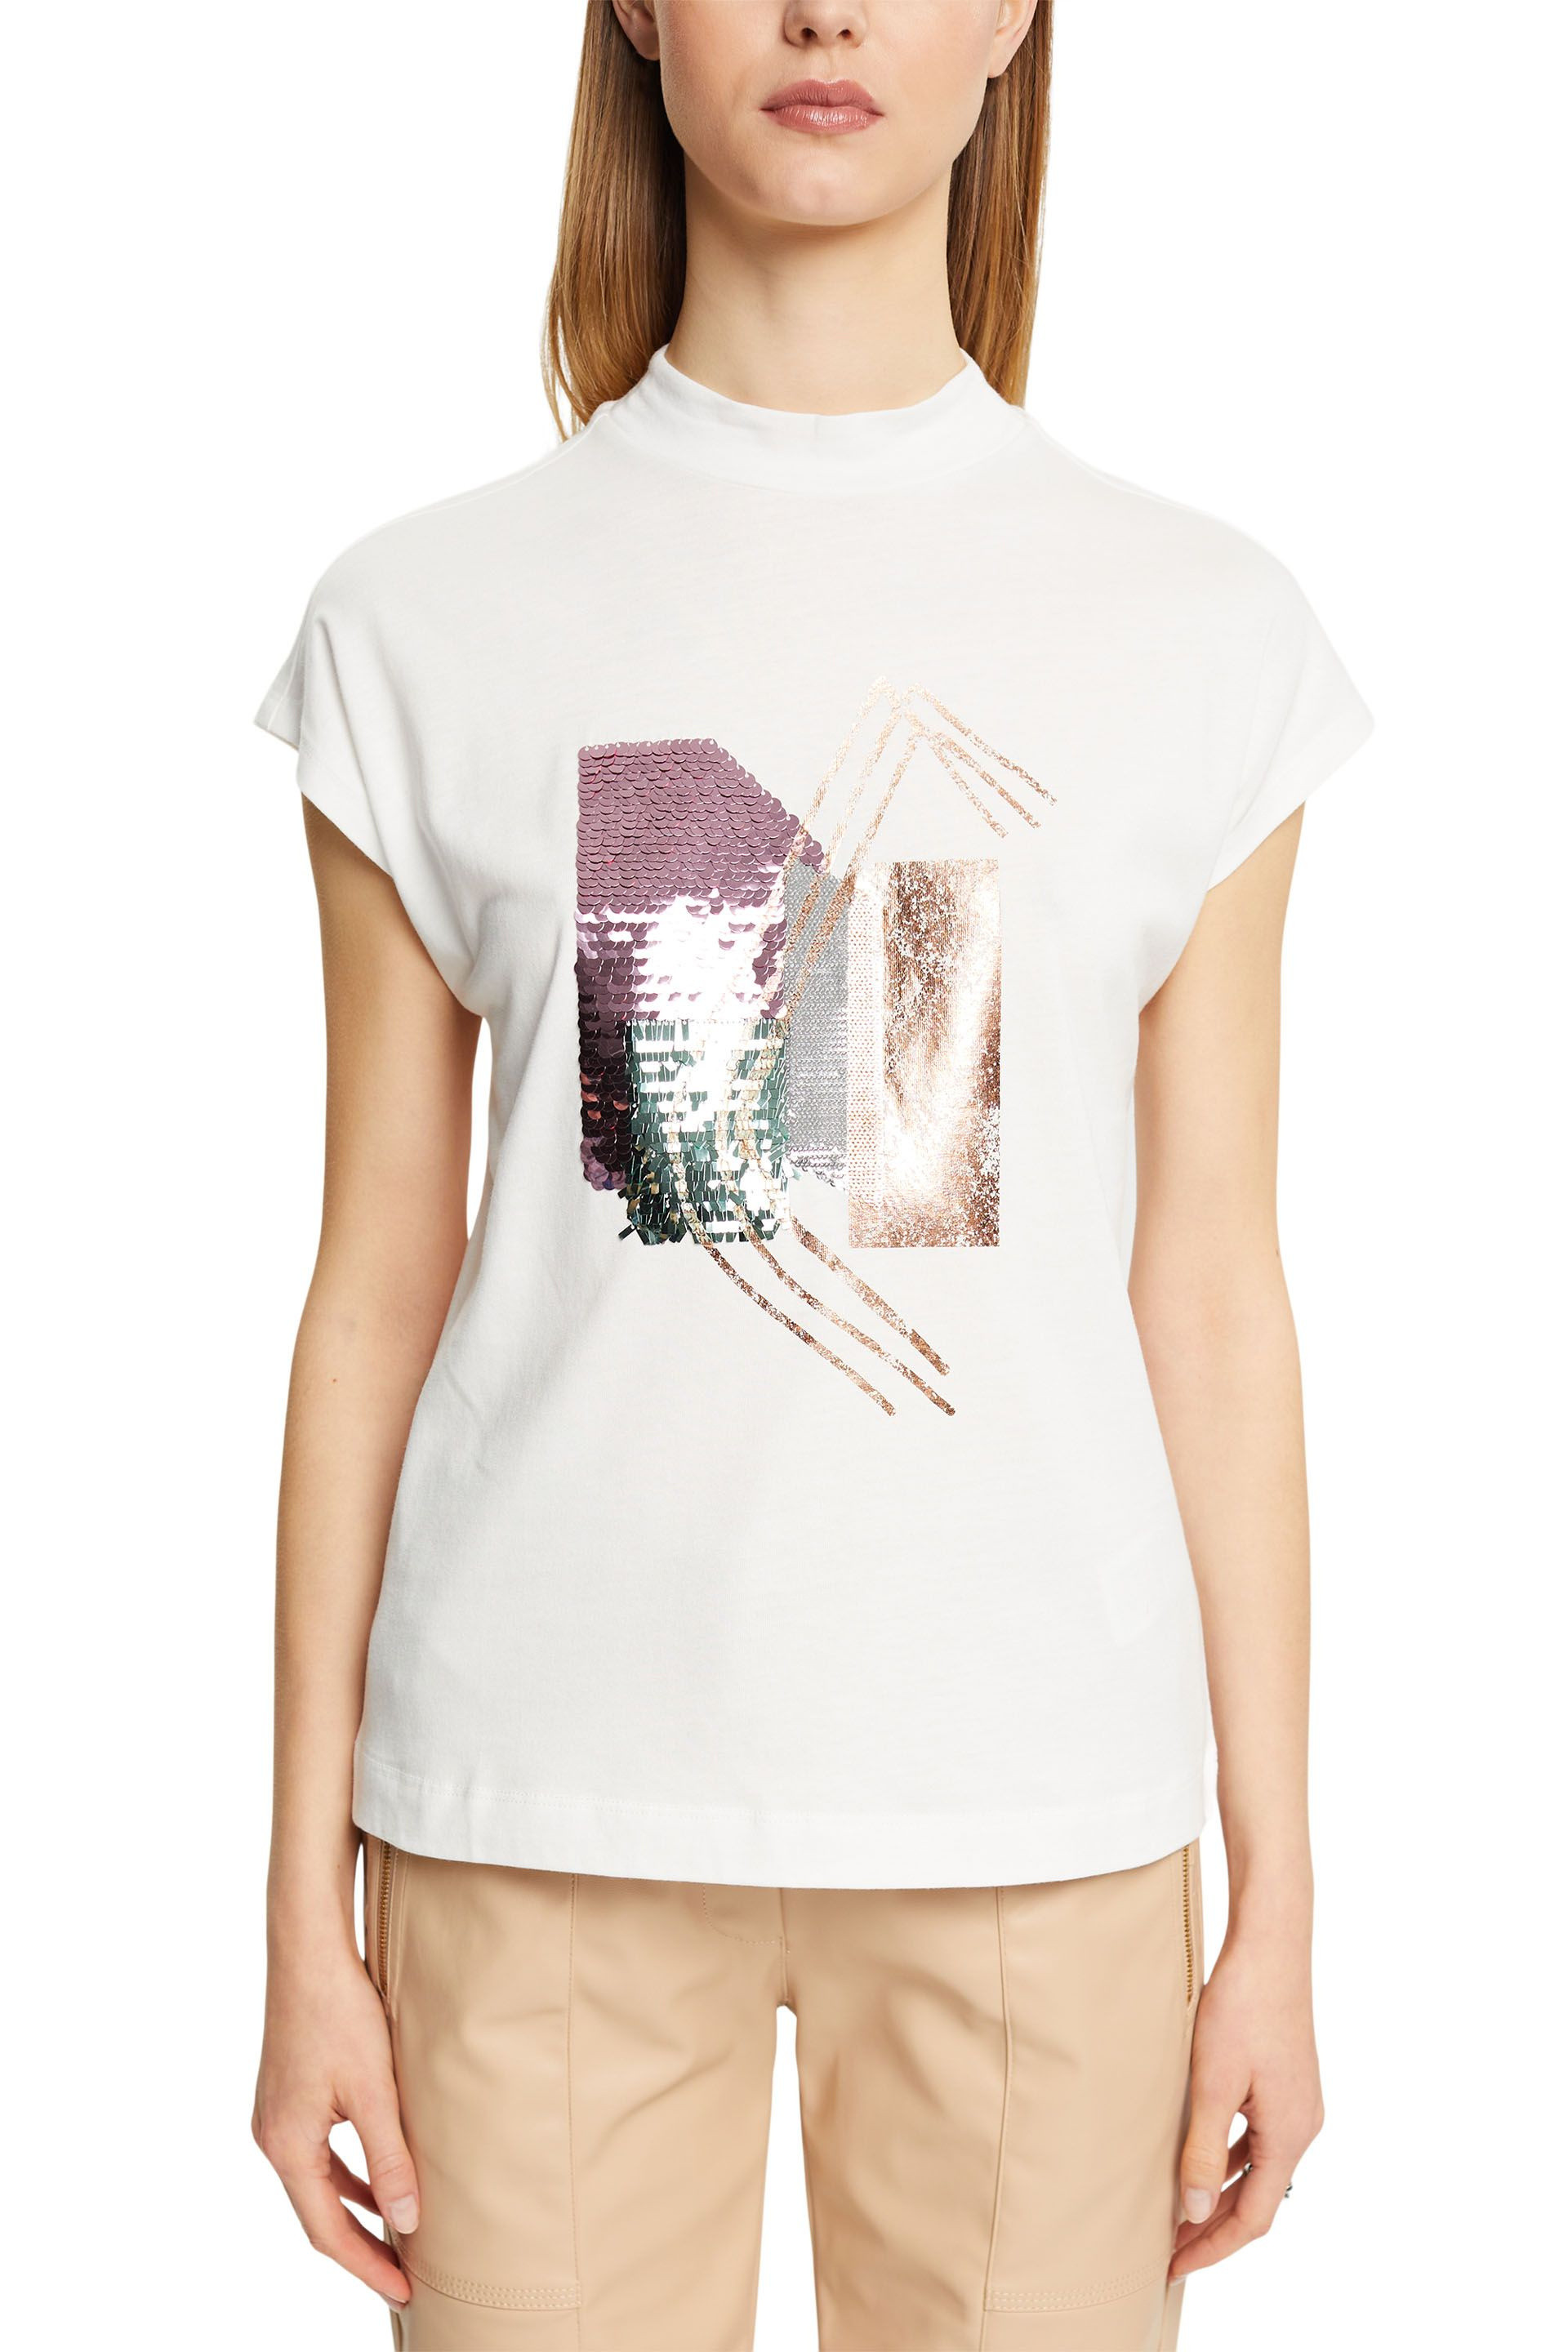 Esprit - T-shirt con paillettes, Bianco, large image number 1